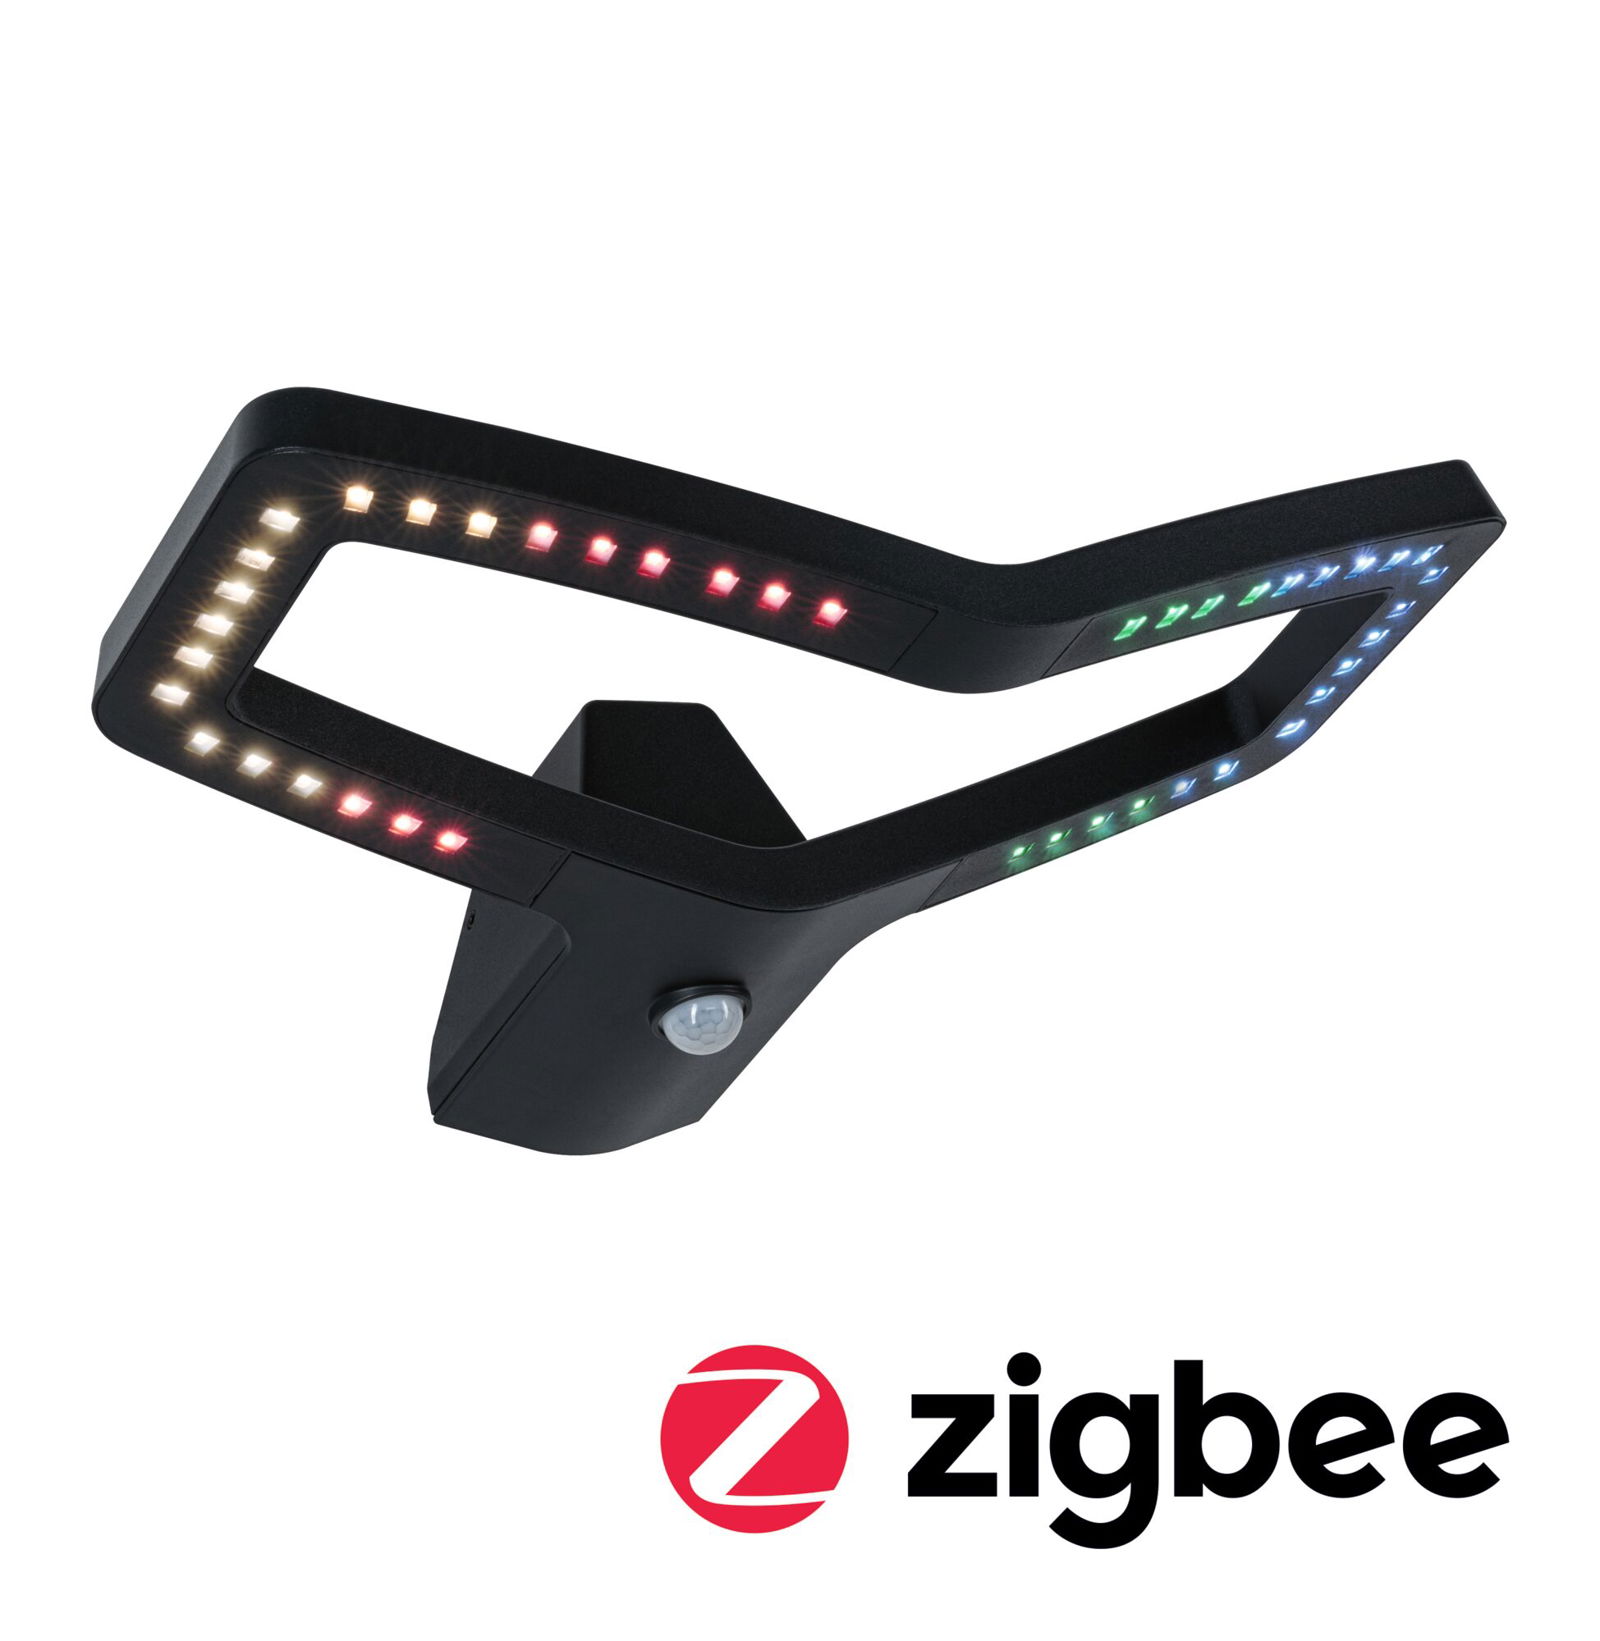 LED Außenwandleuchte Smart Home Zigbee 3.0 Alara Bewegungsmelder IP44 eckig 375x270mm RGBW+ 10W 450lm 230V Anthrazit Metall